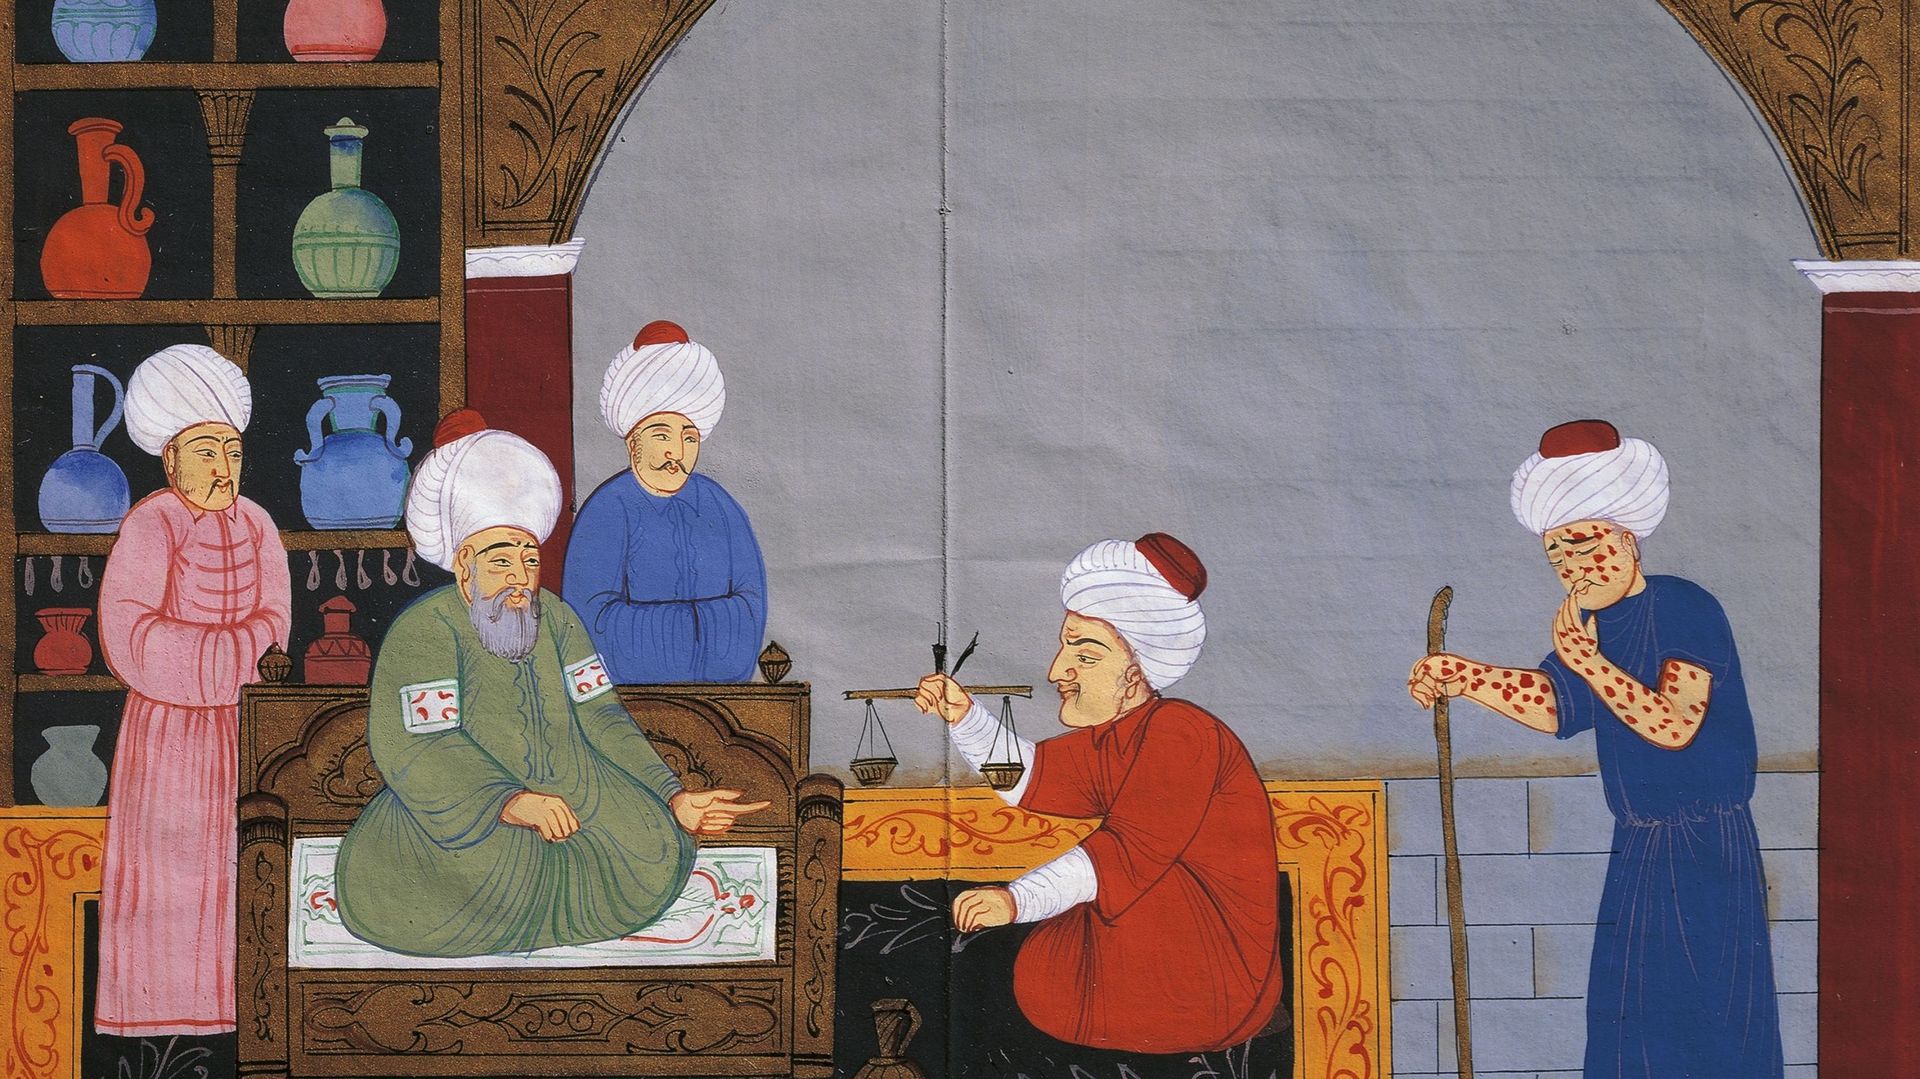 Préparation de médicaments pour le traitement d’un patient atteint de variole, miniature du "Canon de la médecine", d' Avicenne (980-1037), manuscrit ottoman. (Turquie, XVIIe siècle)